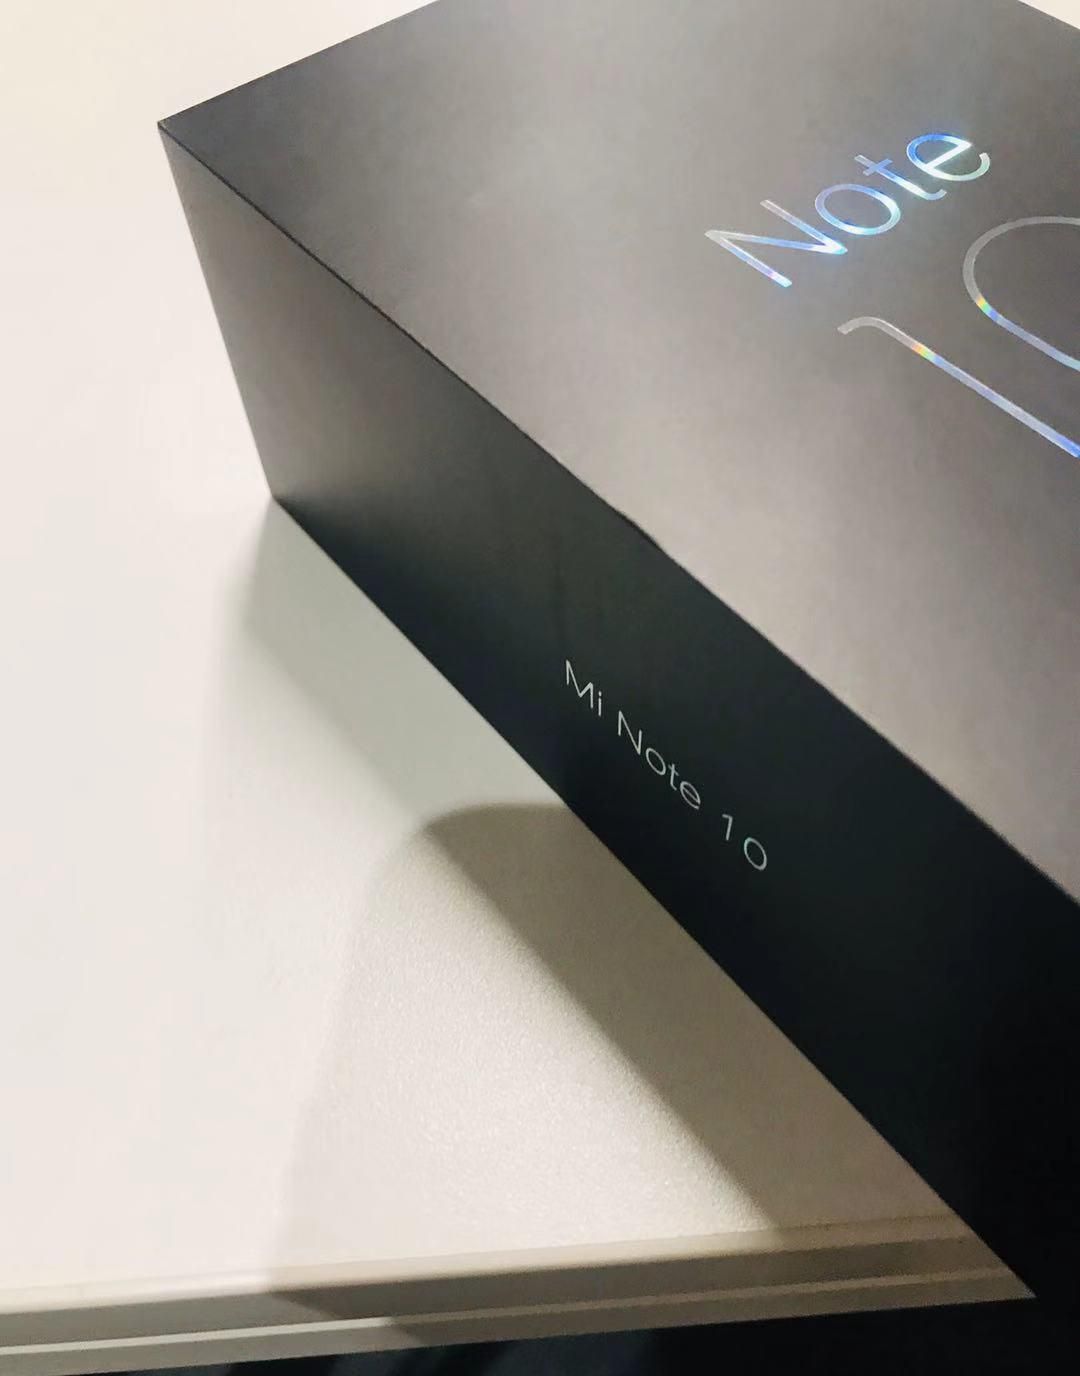 Xiaomi Mi Note 10 retail box